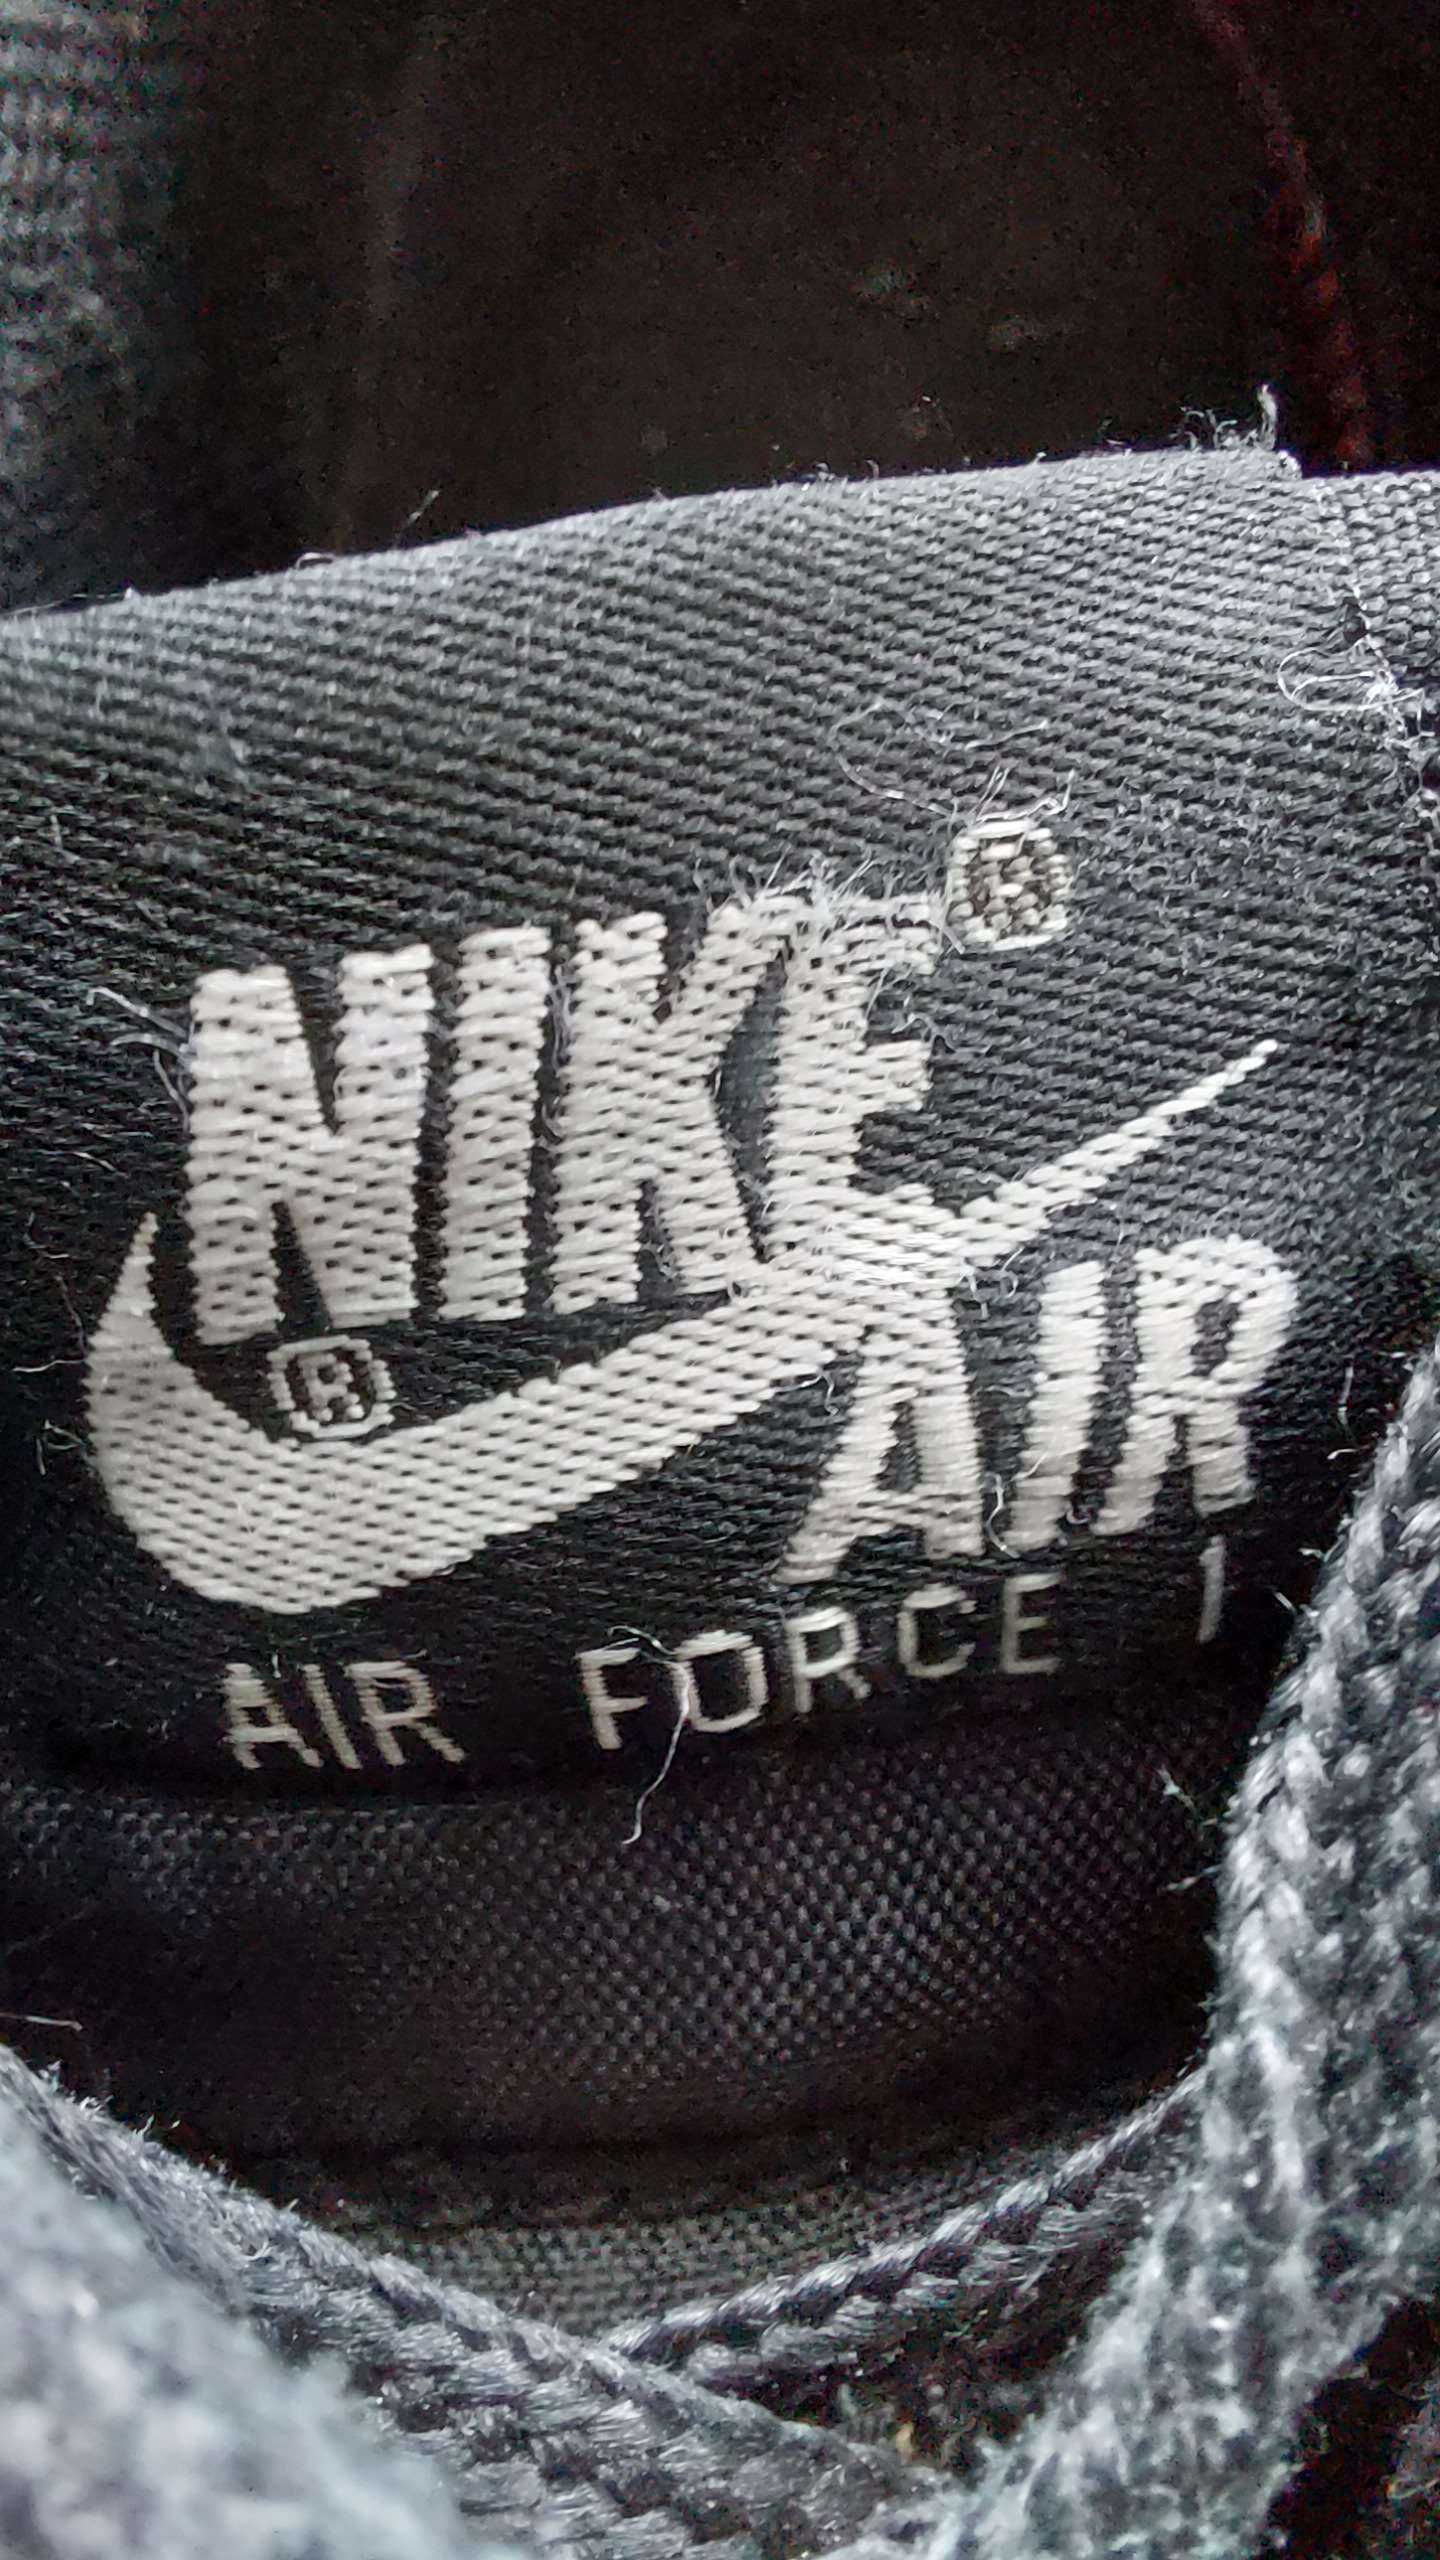 Оригинални обувки "Nike Air Force 1", мъжки, 40 номер